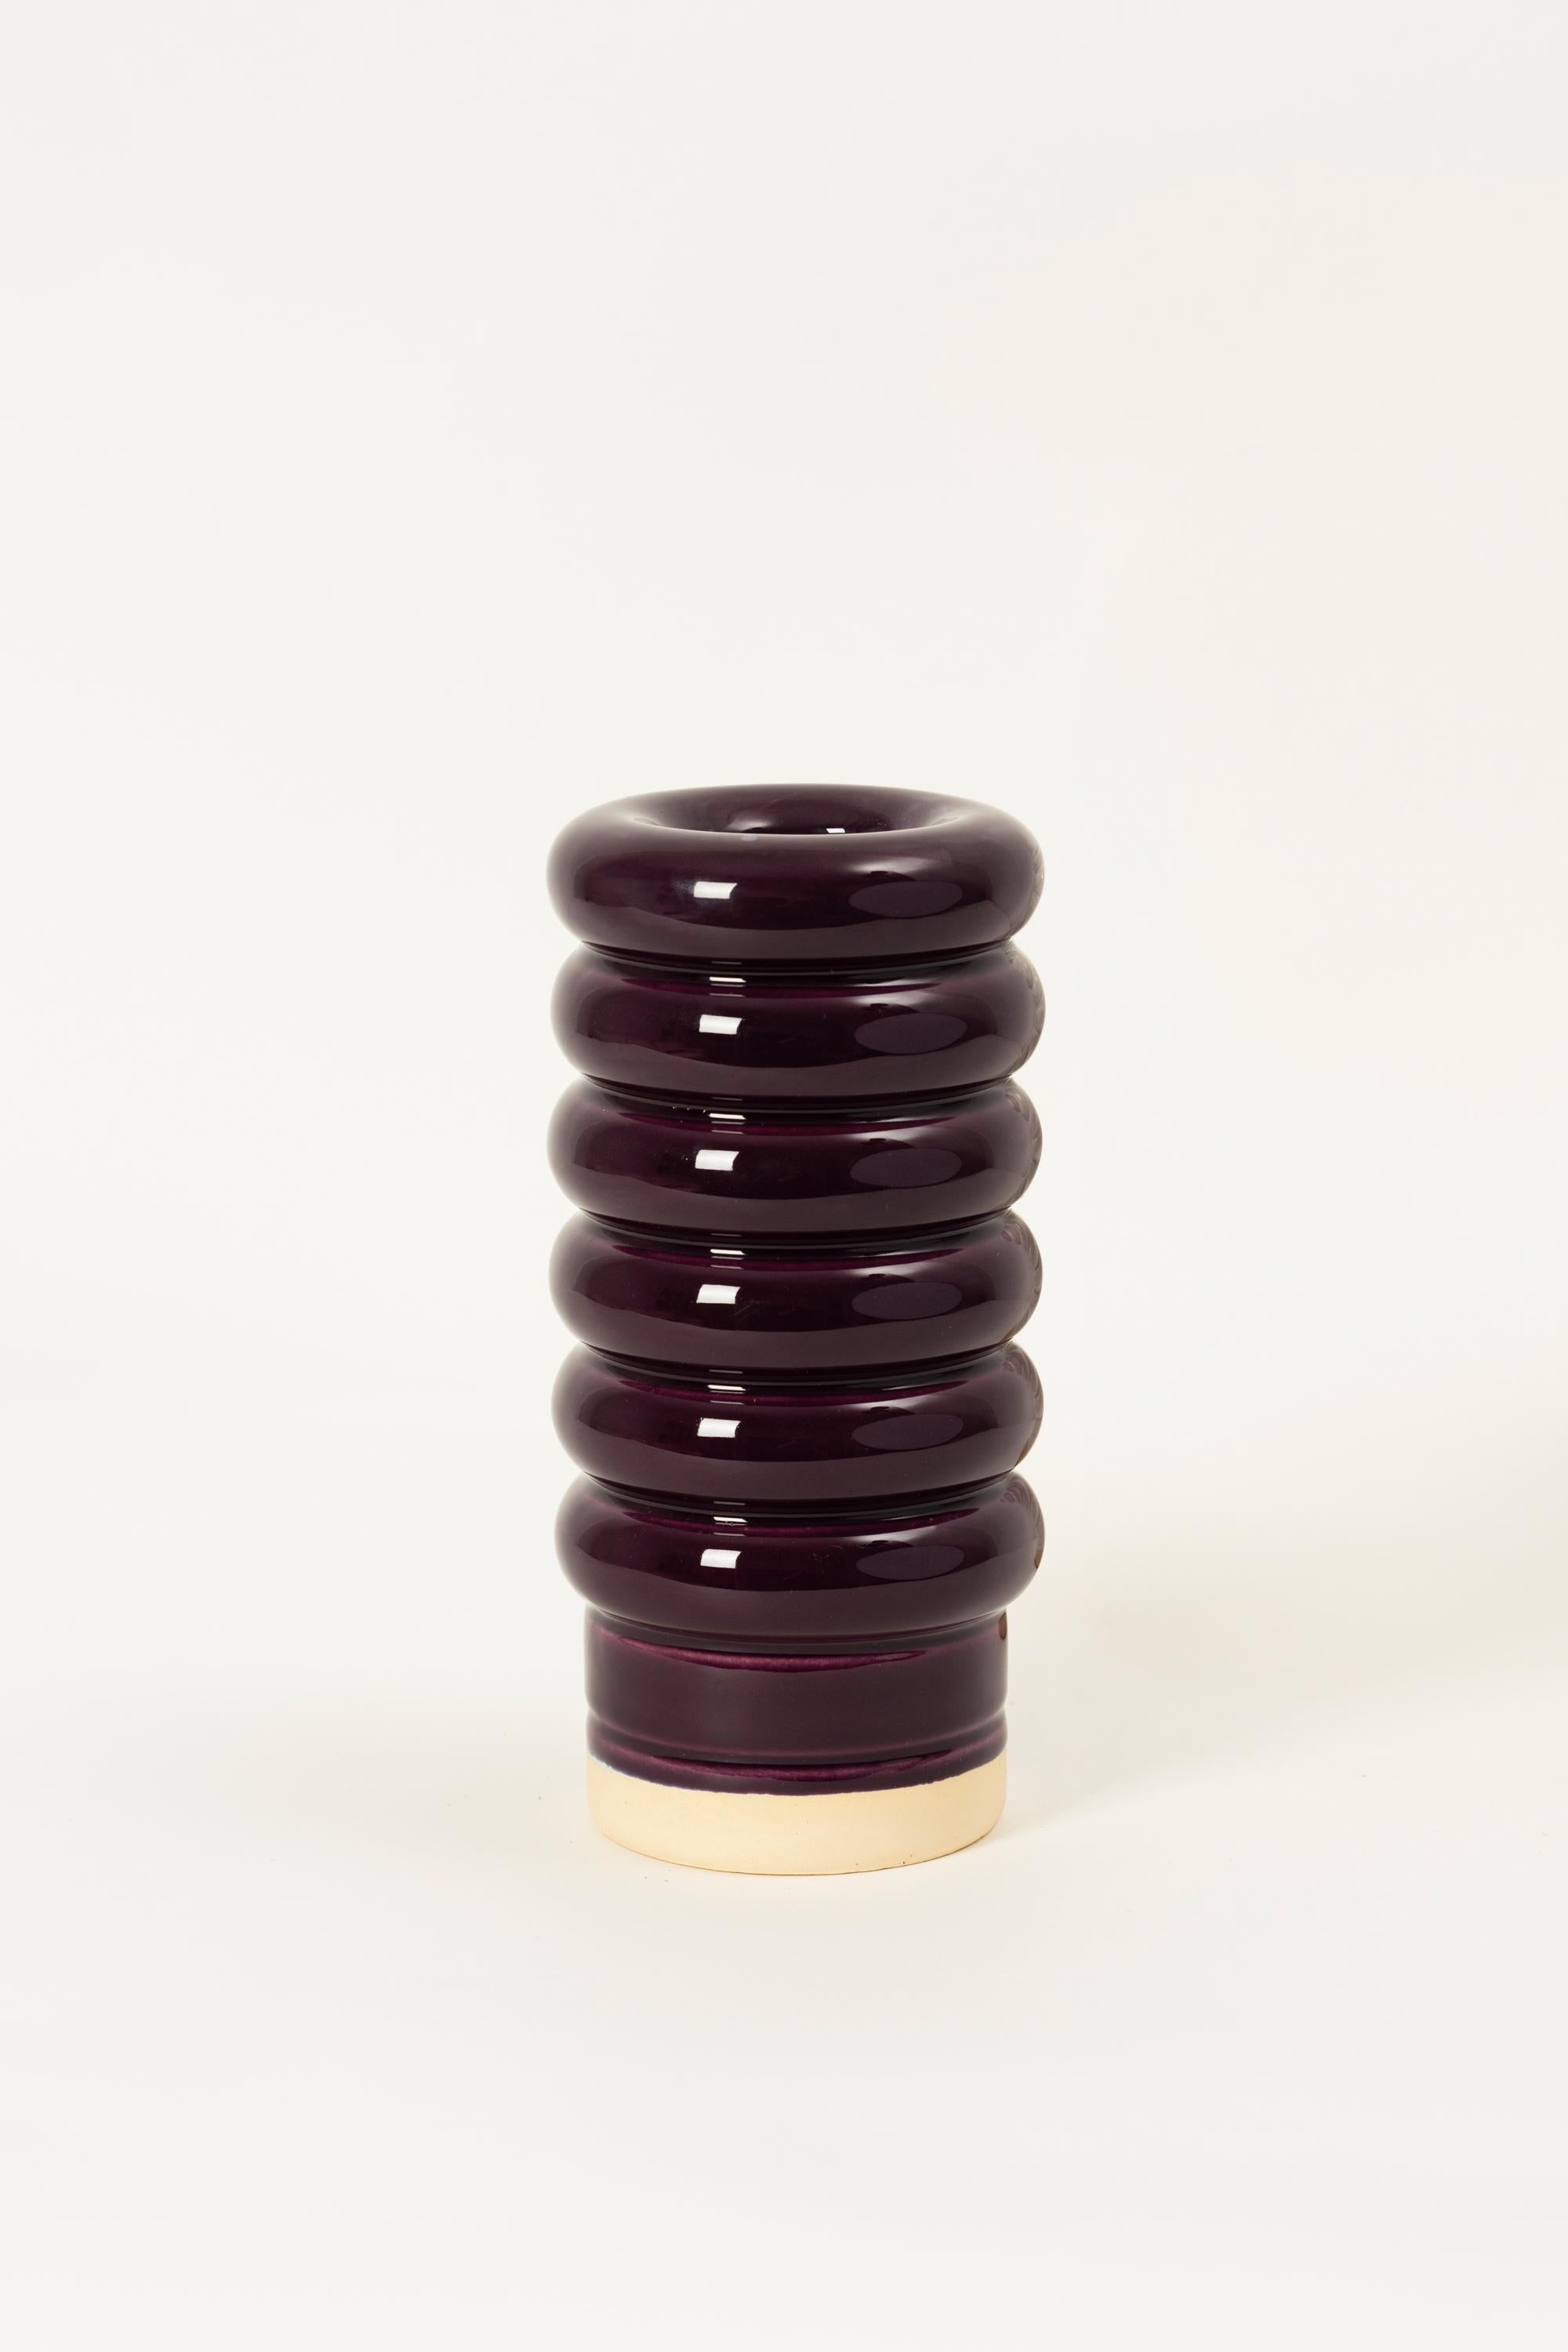 Eine kleine Vase mit einer einzigartigen Form A, die aus sechs Brezeln und einem kontrastierenden Sockel besteht. Die Vase NANA bringt jeden Blumenstrauß wunderschön zur Geltung, dessen Schönheit durch die auffällige Farbe der Vase noch